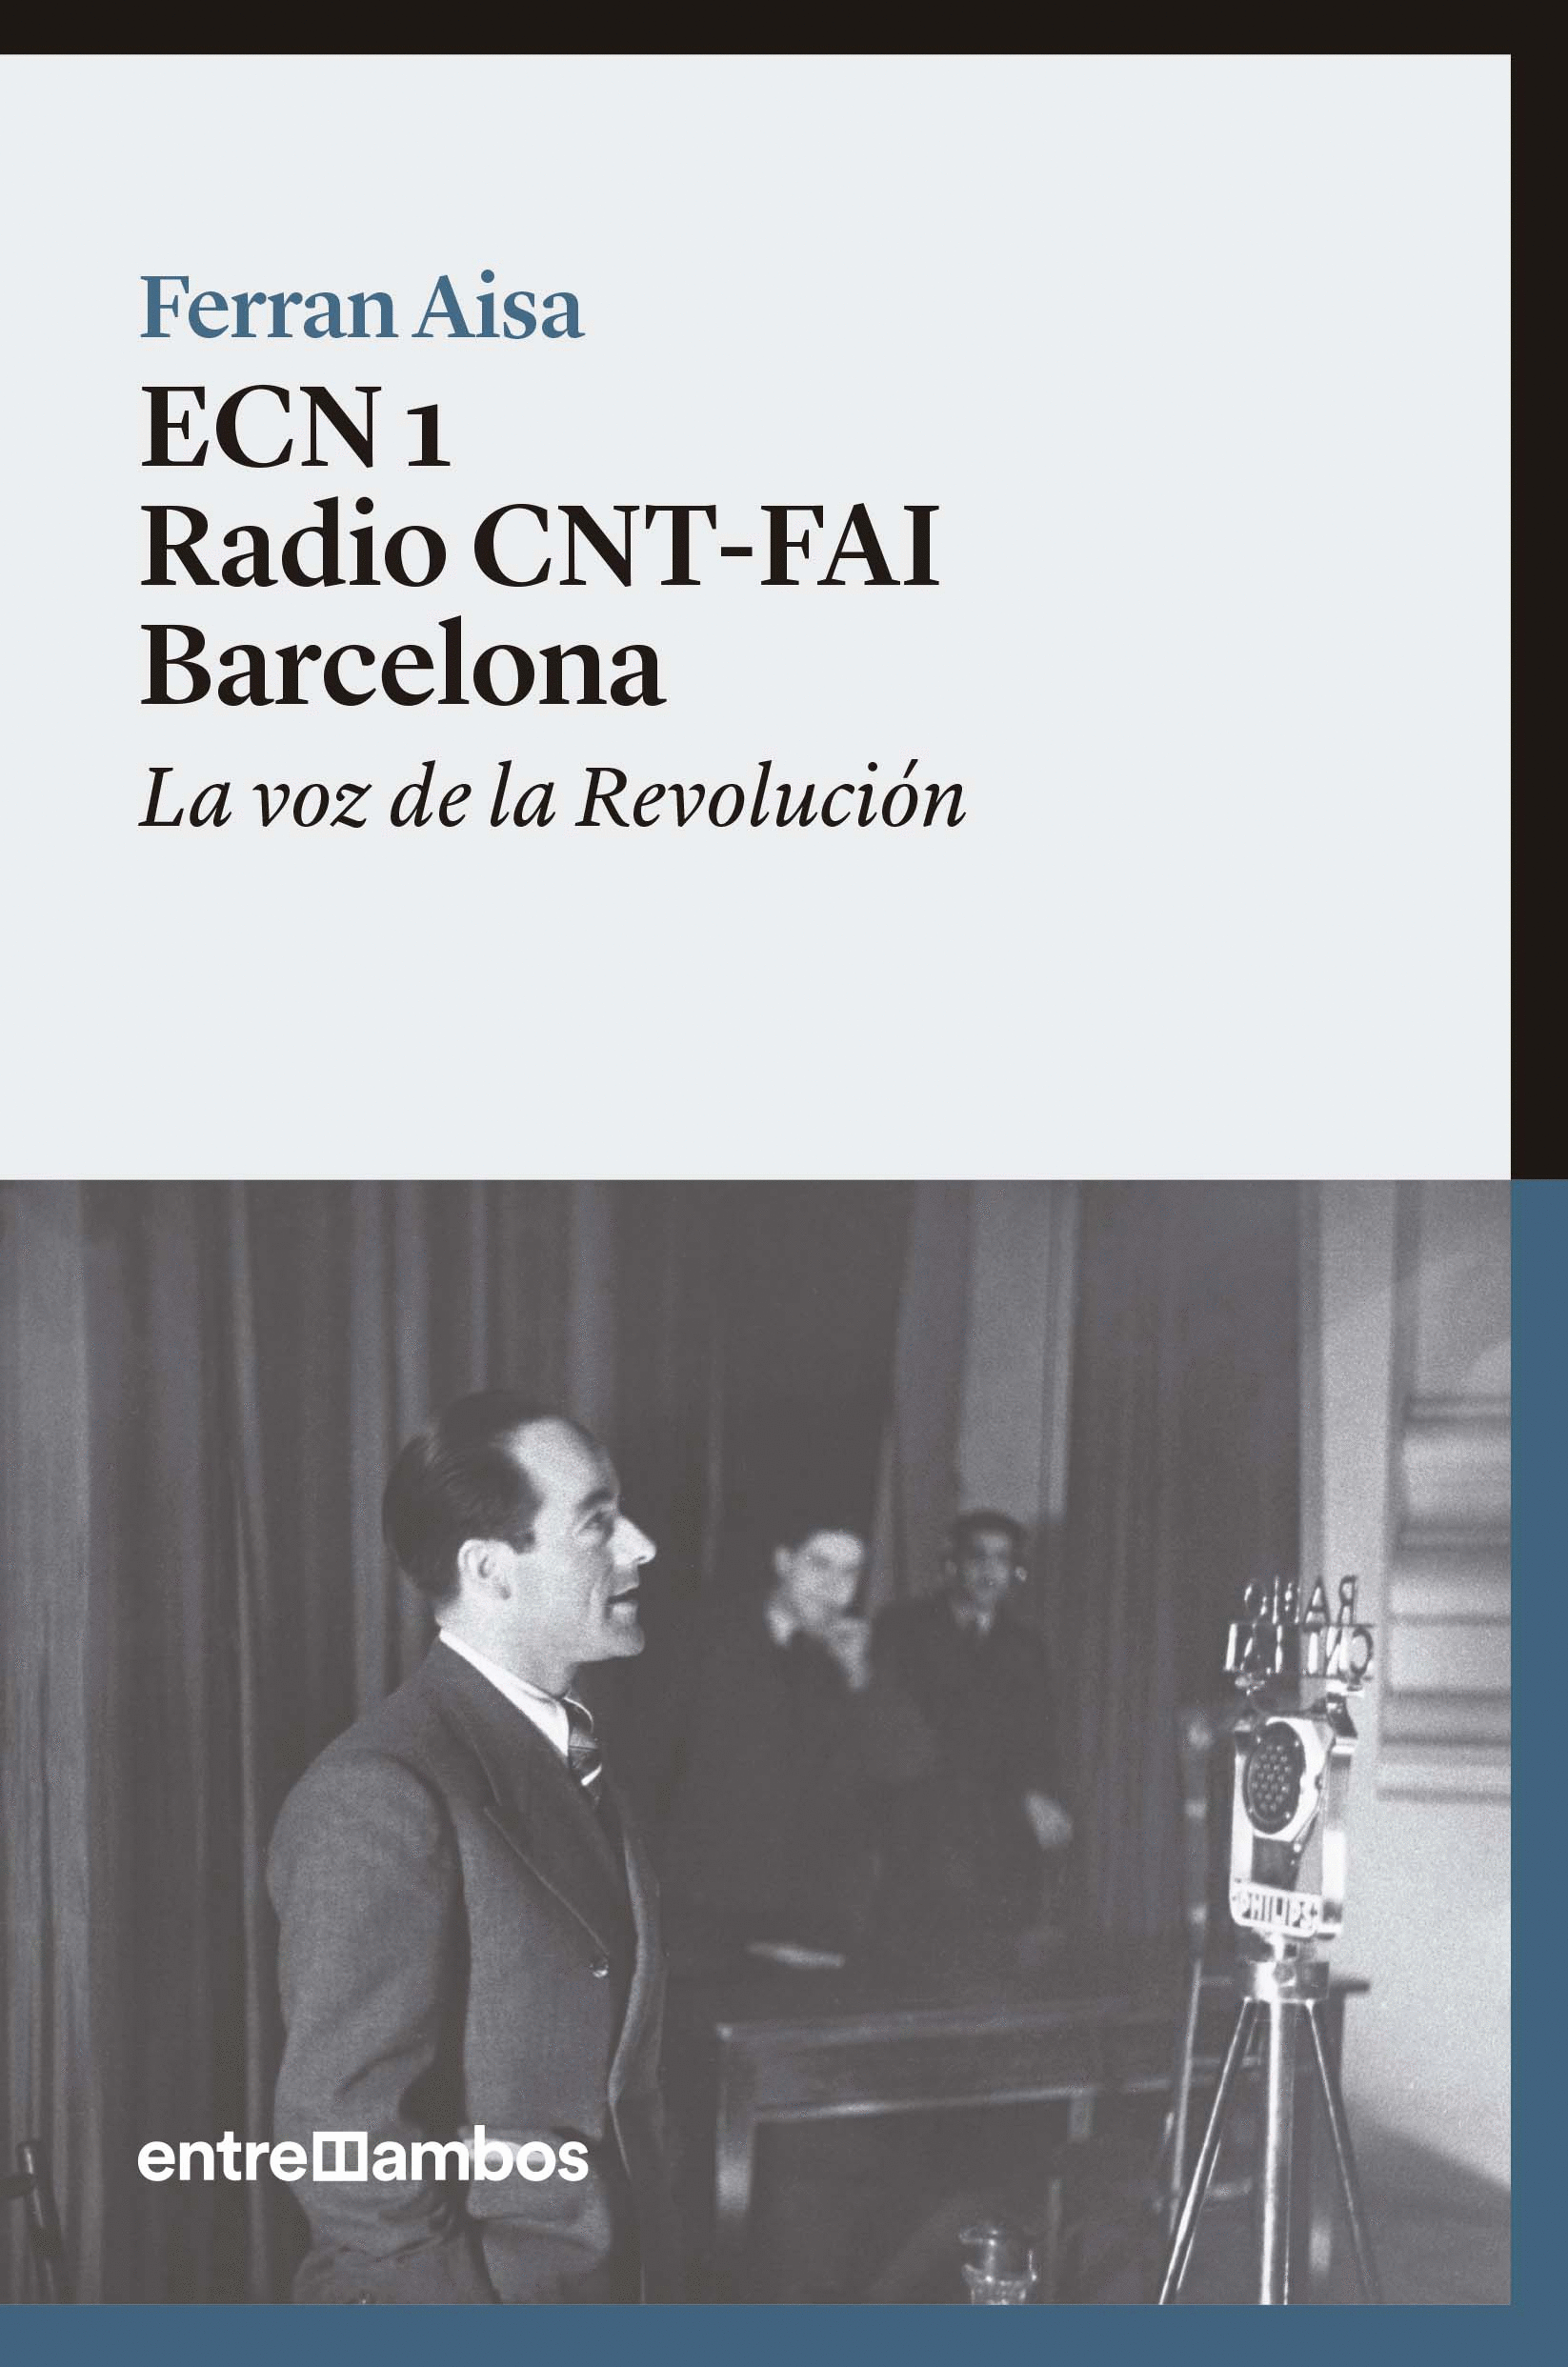 ECN 1 RADIO CNT-FAI BARCELONA: LA VOZ DE LA REVOLUCIÓN